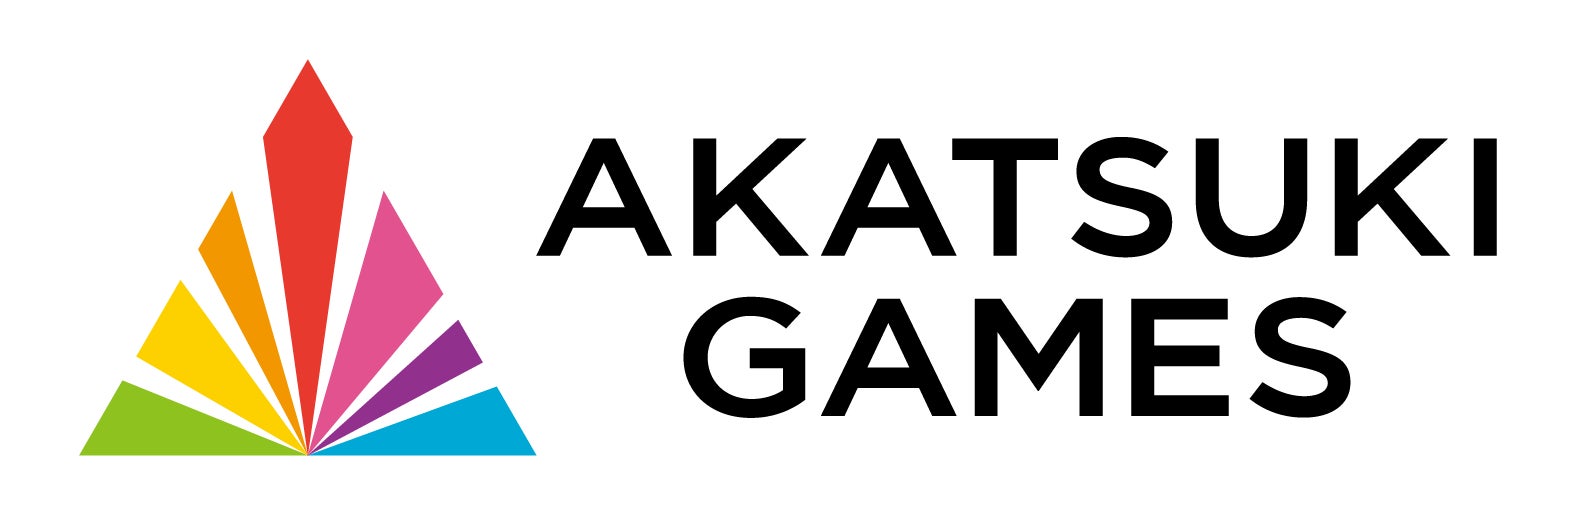 アカツキゲームス、コーポレートロゴ変更のお知らせ